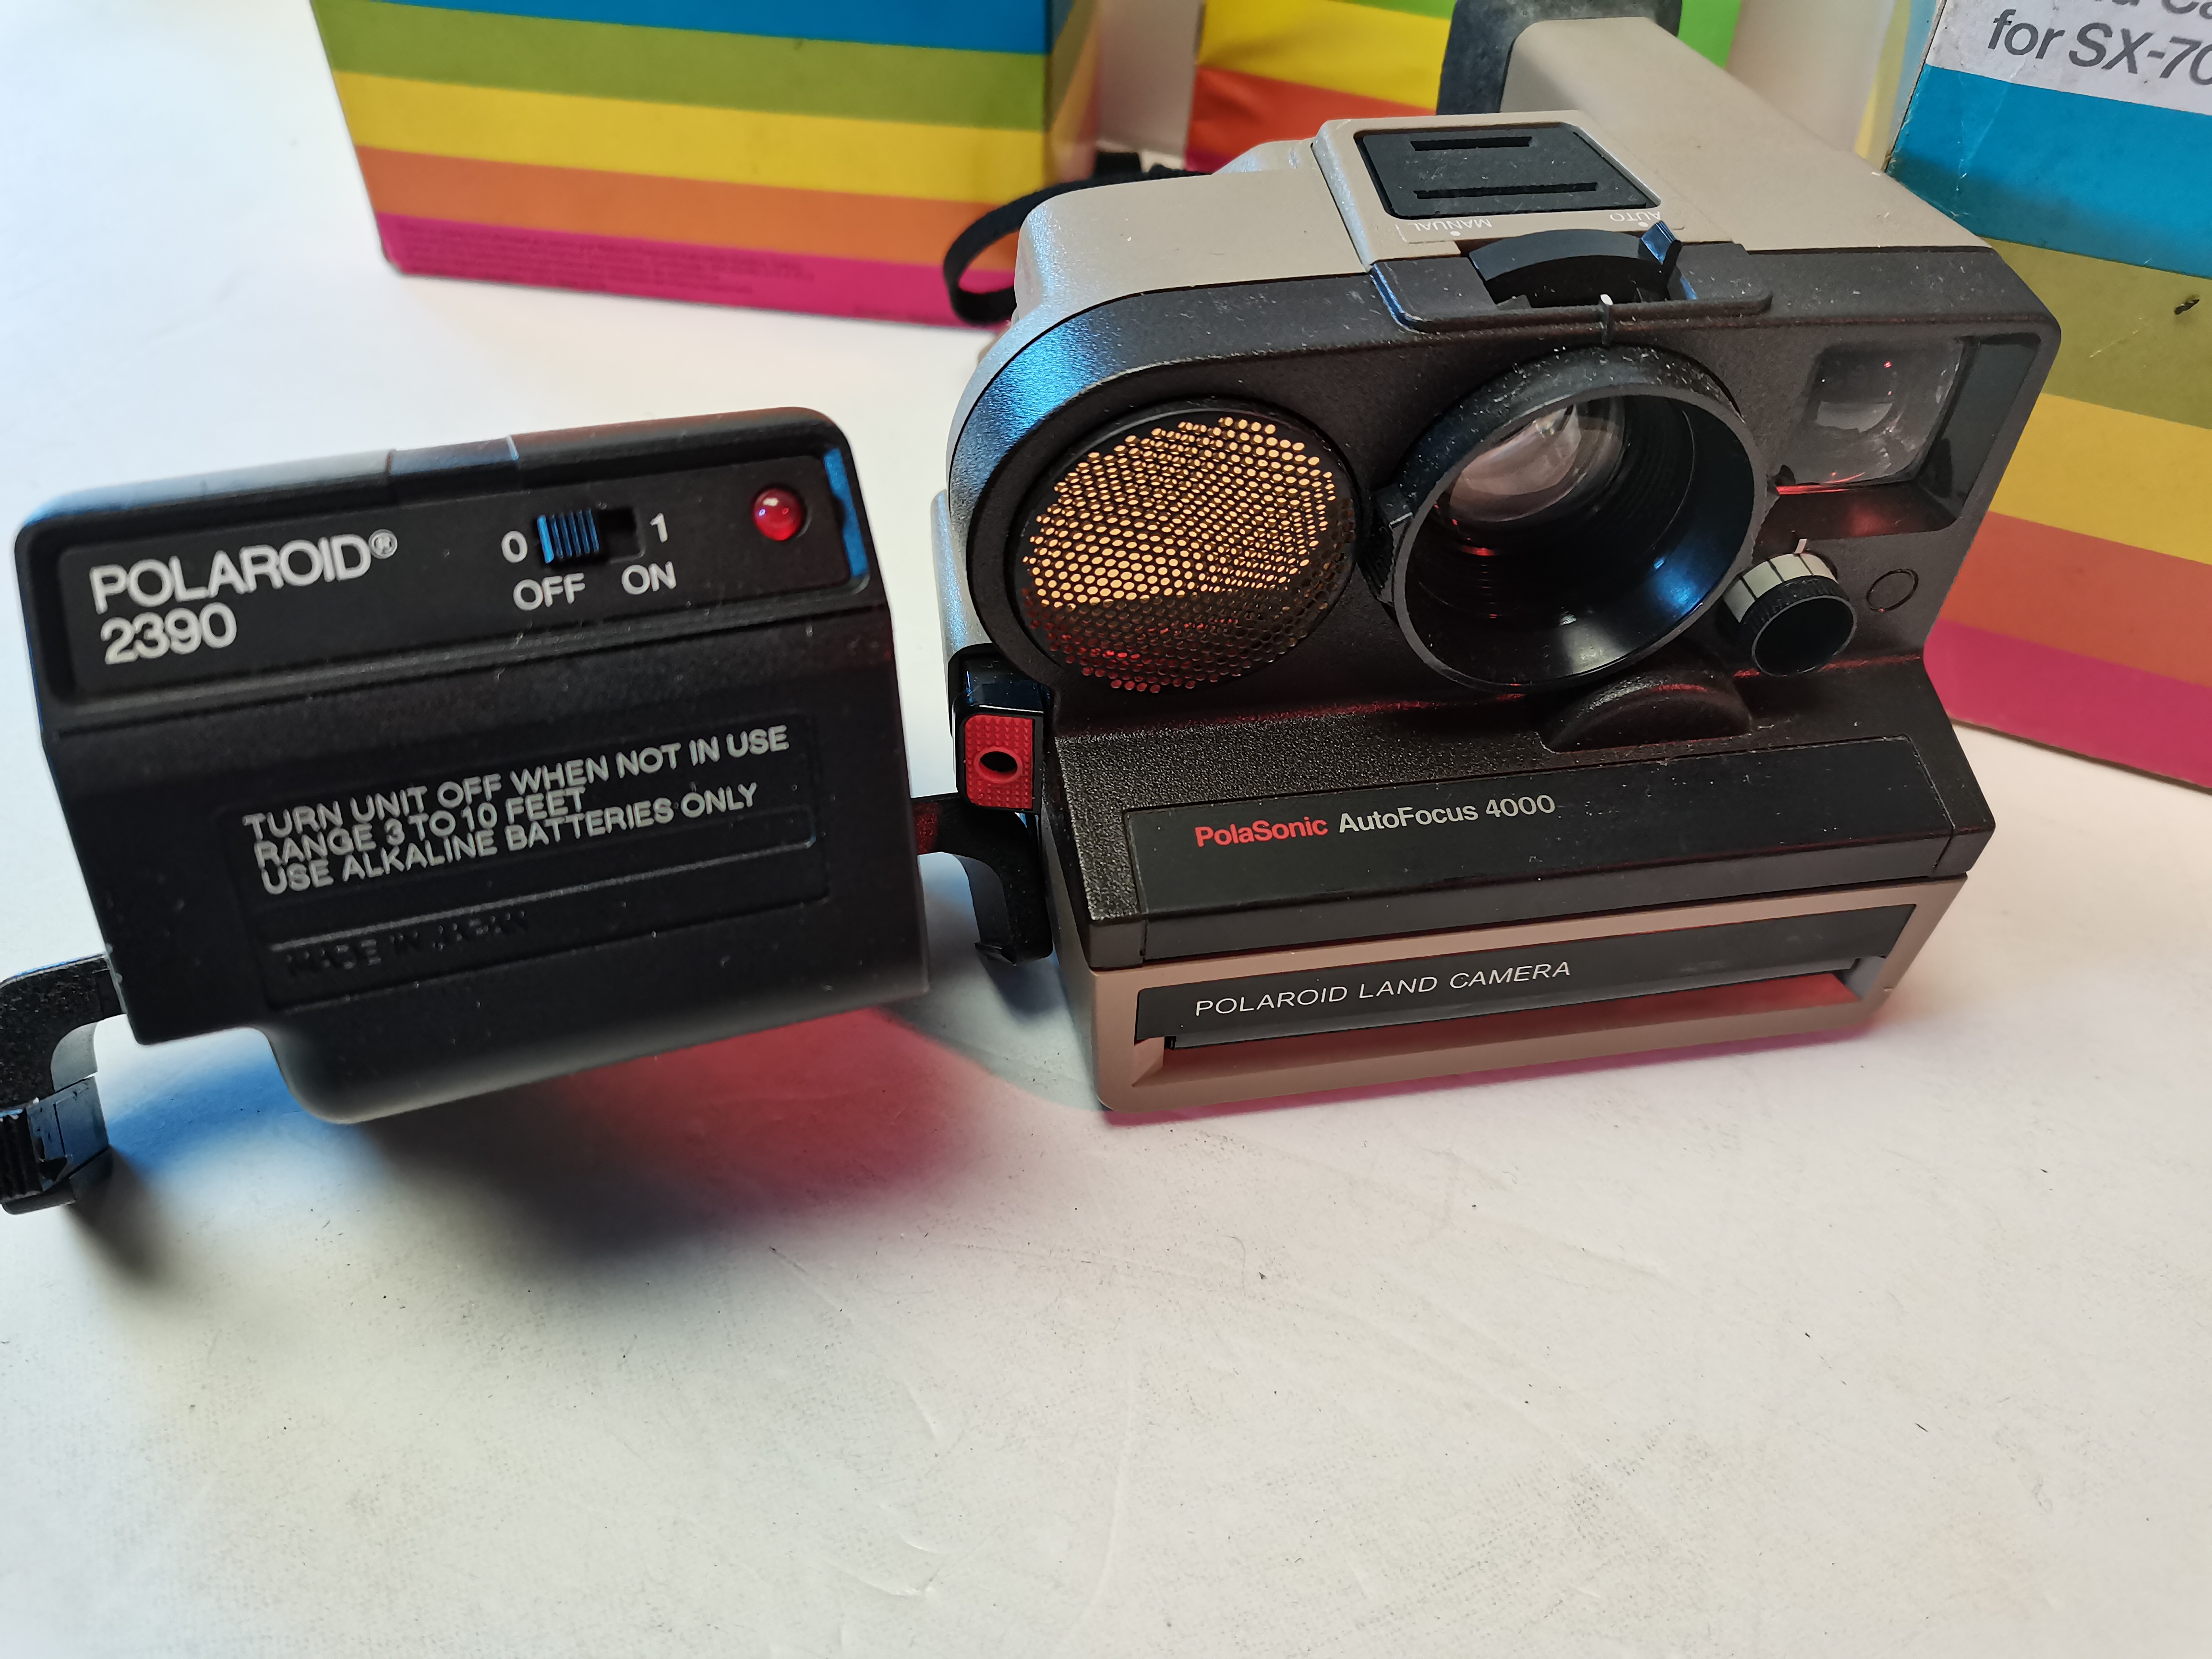 Polaroid PolaSonic AutoFocus 4000 Land Camera for SX-70, Polaroid Polatronic 5 Electronic Flash - Image 2 of 2